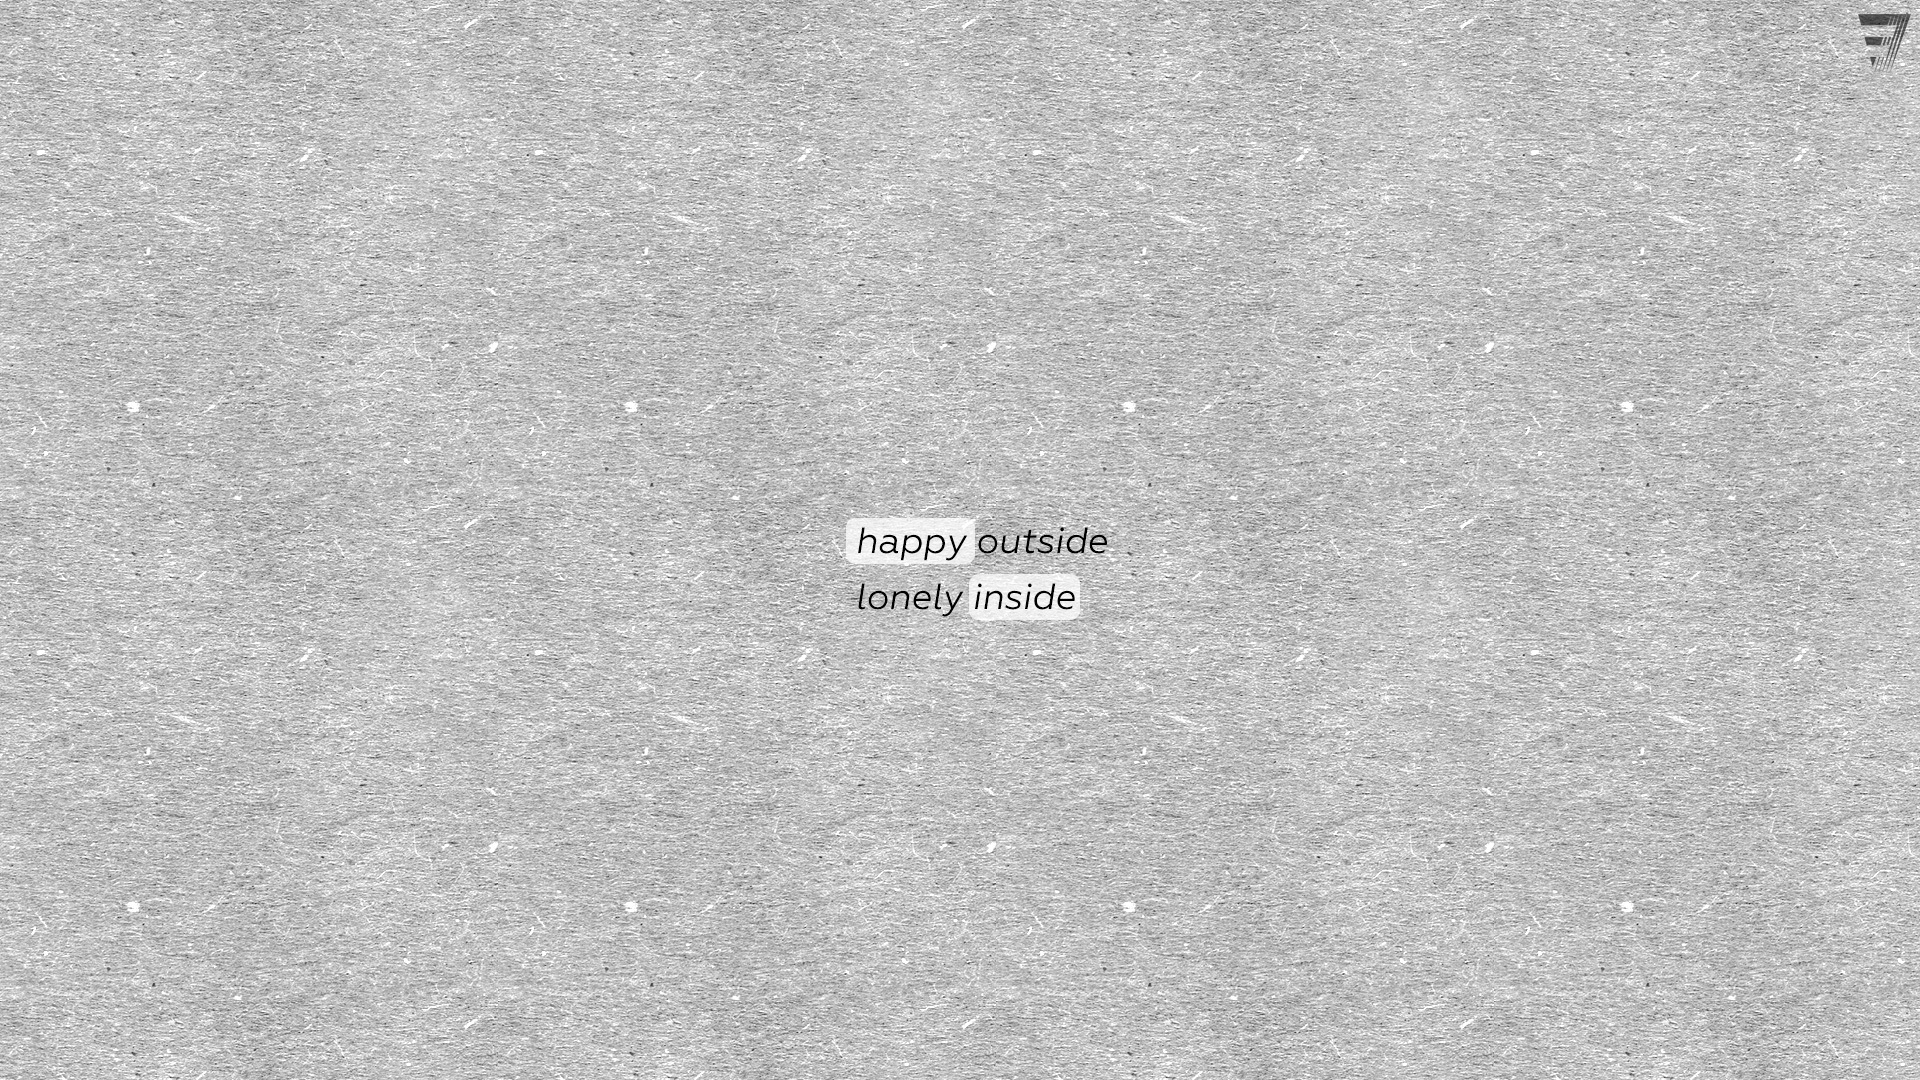 happy-outside-lonely-inside-2b.jpg